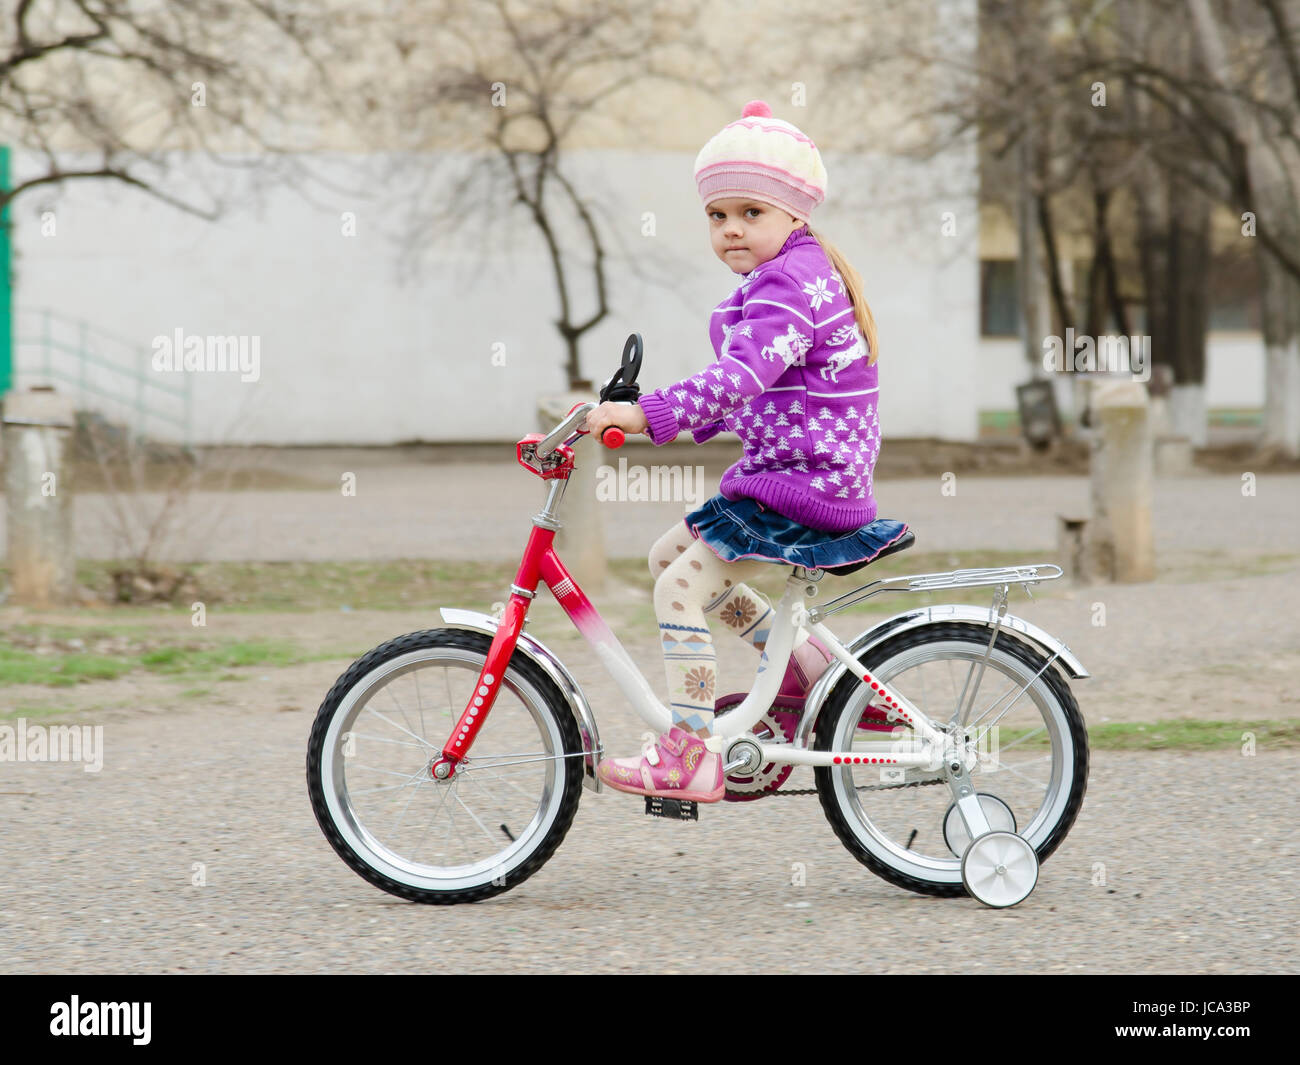 Une fillette de quatre ans va sur un vélo sur une route pavée d'asphalte. Une journée de printemps. Banque D'Images